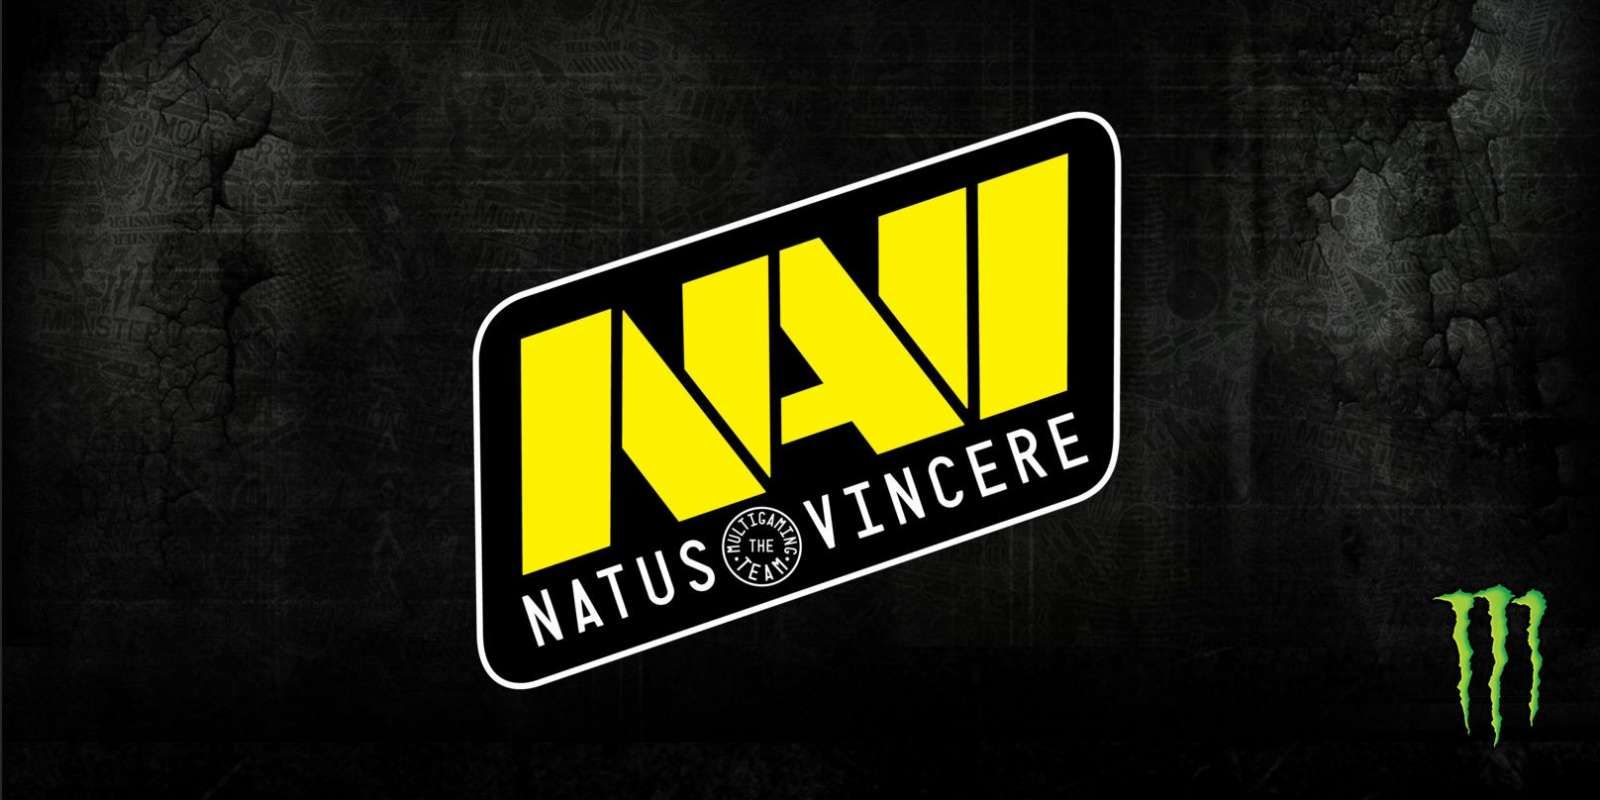 Состав NaVi по Dota 2 был переведен в инактив